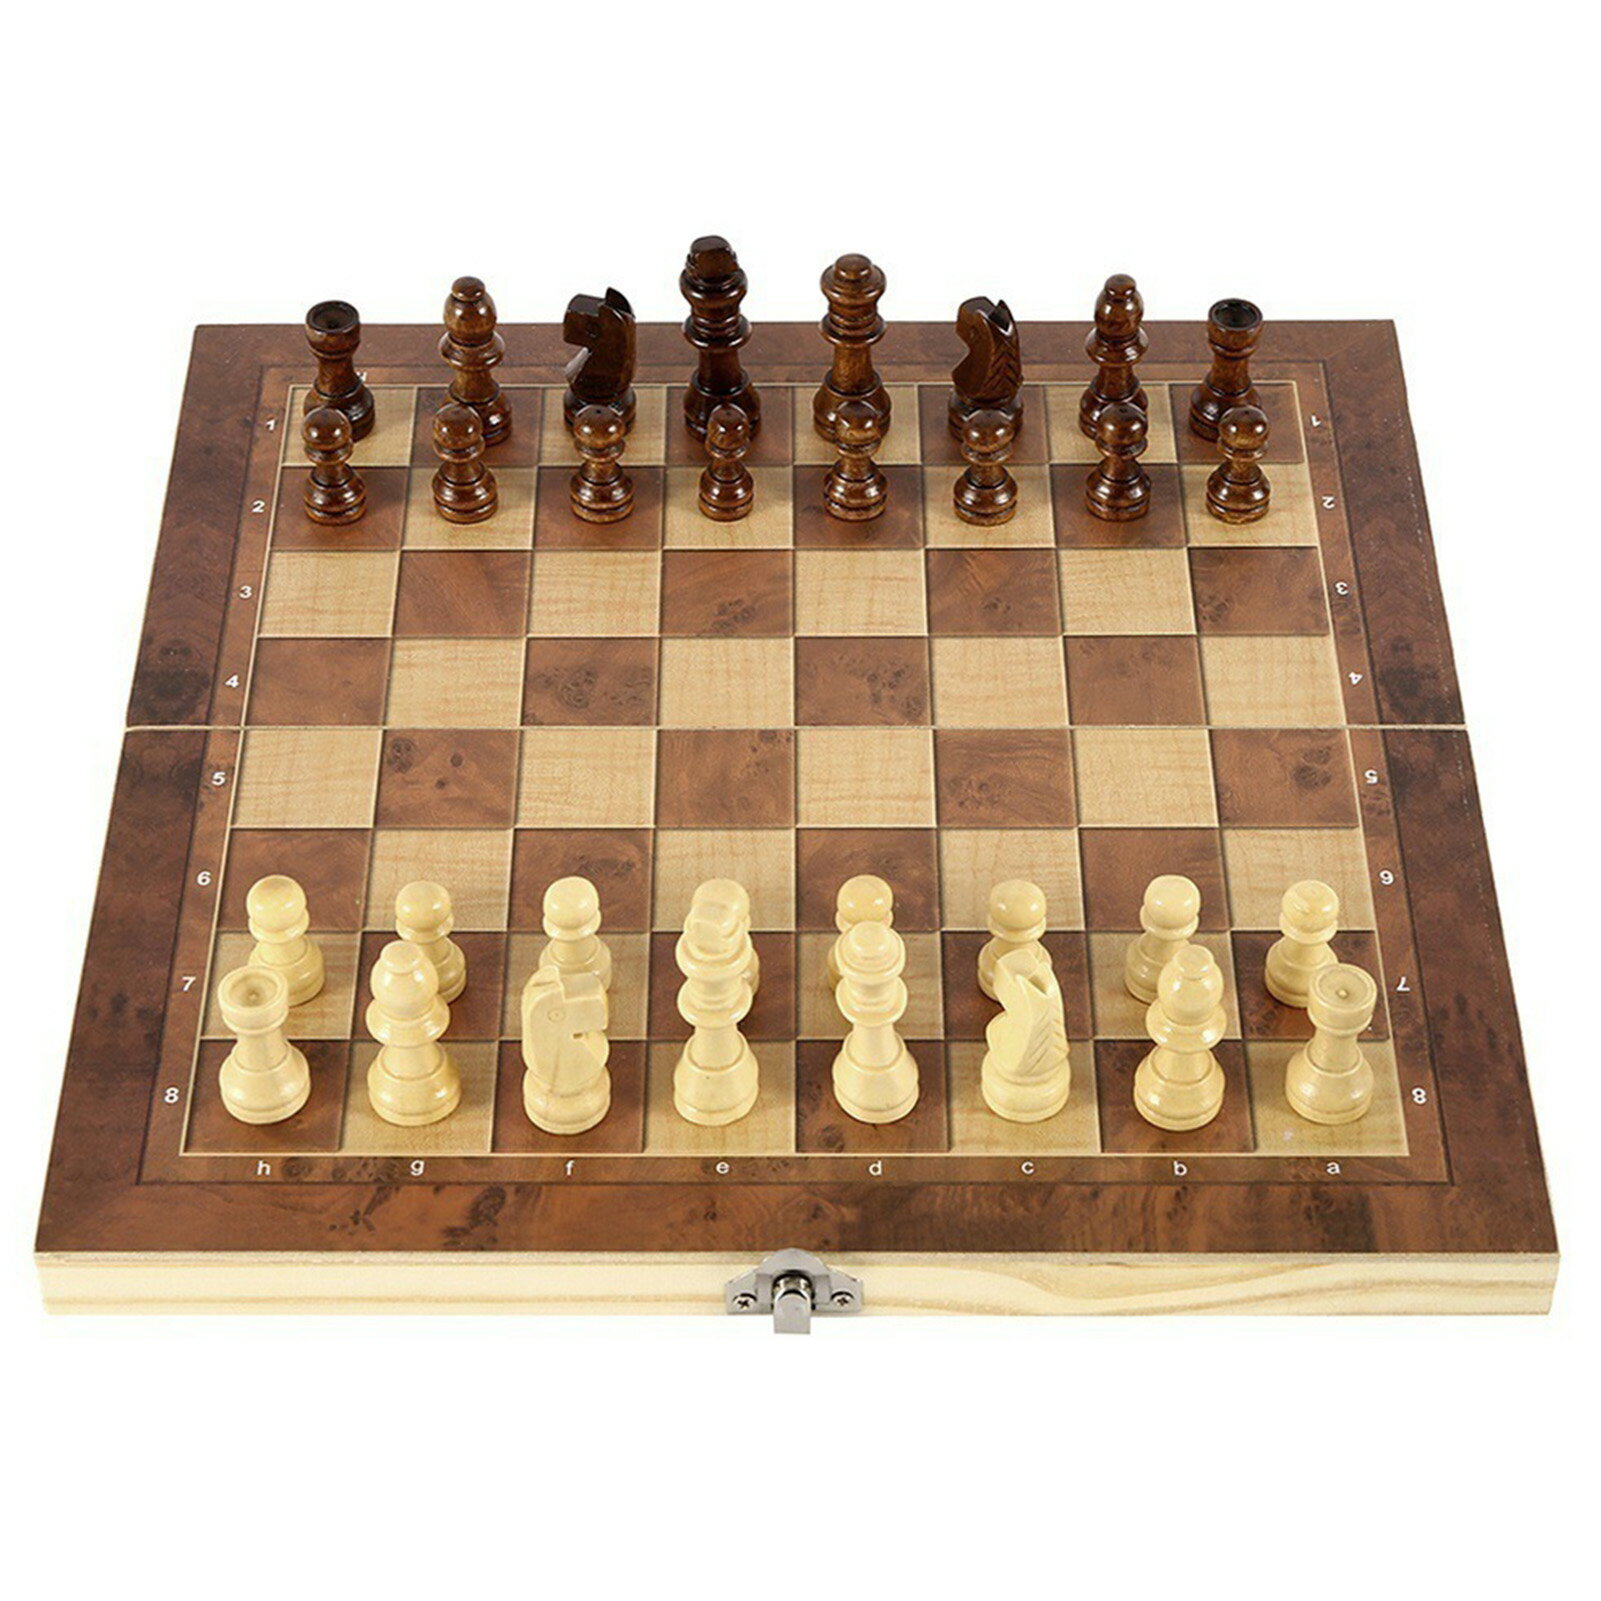 木製 チェスセット チェス 折りたたみ 24CM 3 IN 1 チェス チェッカーズ バックギャモン Chess コンパクト収納 対戦ゲーム 子供から大人まで プレゼント 初心者向け 2人用 ボードゲーム イギリ…